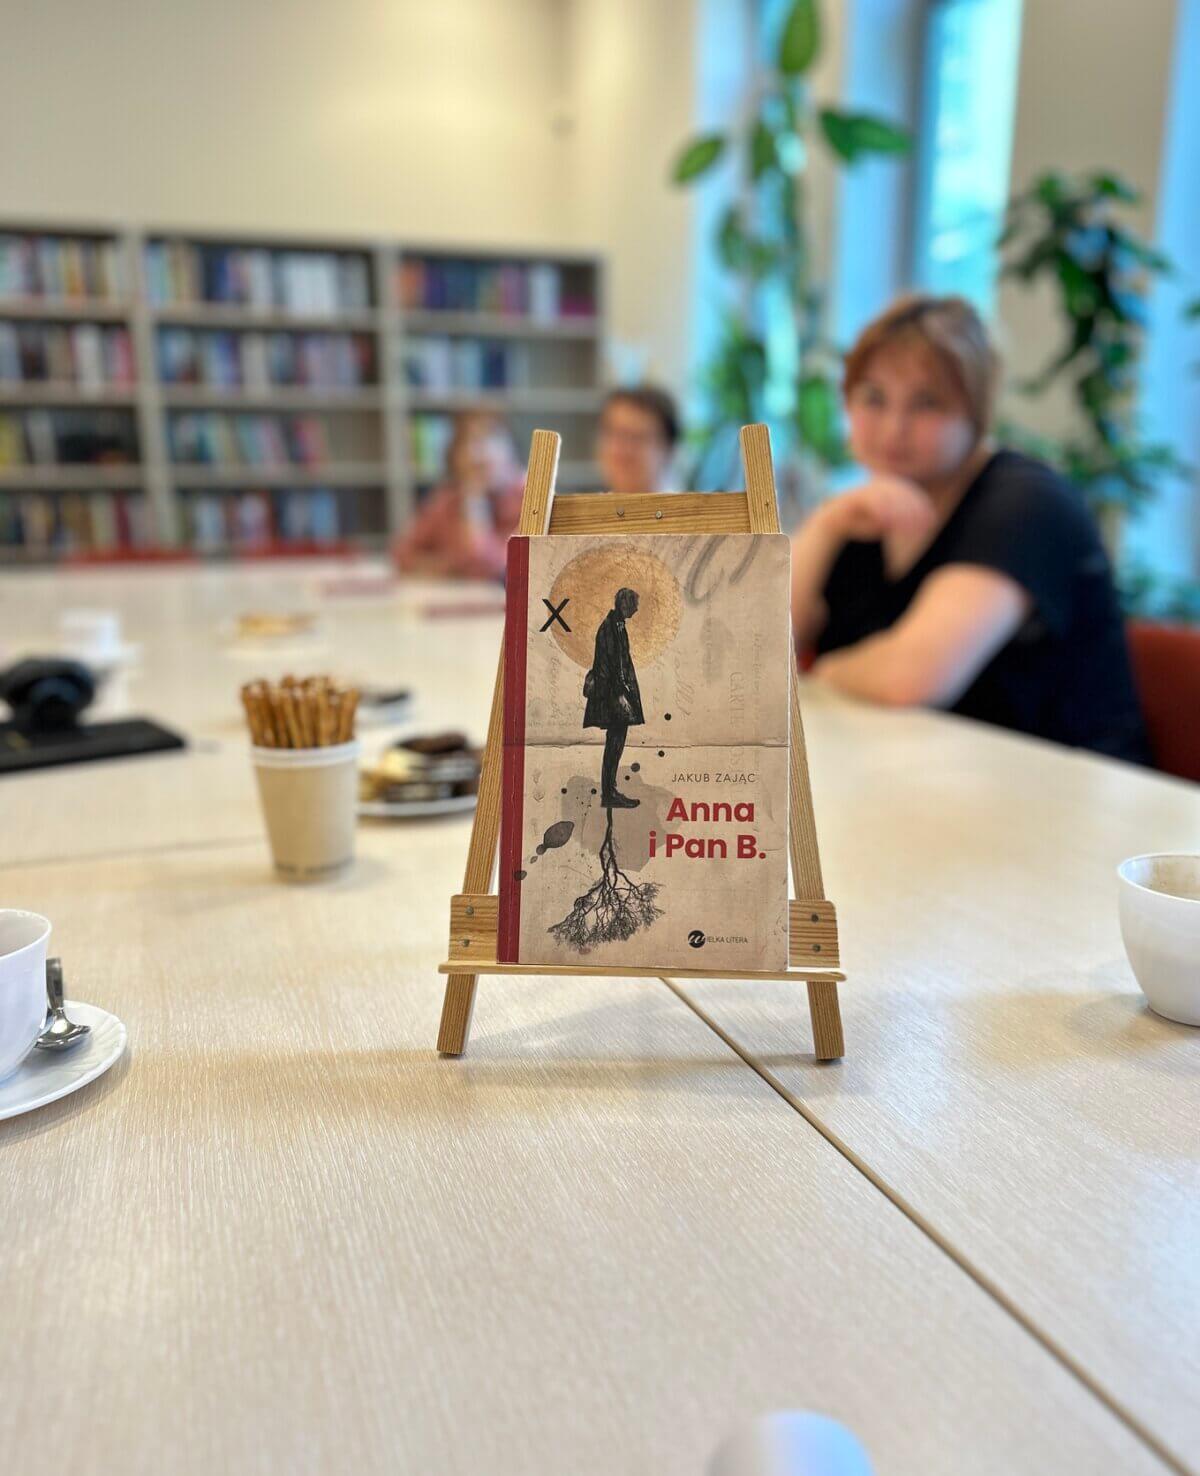 Na zdjęciu widać książkę „Anna i Pan B.” której autorem jest Jakub Zając. Książka jest oparta o stojak i stoi na stole. W tle widać rozmyte uczestniczki.